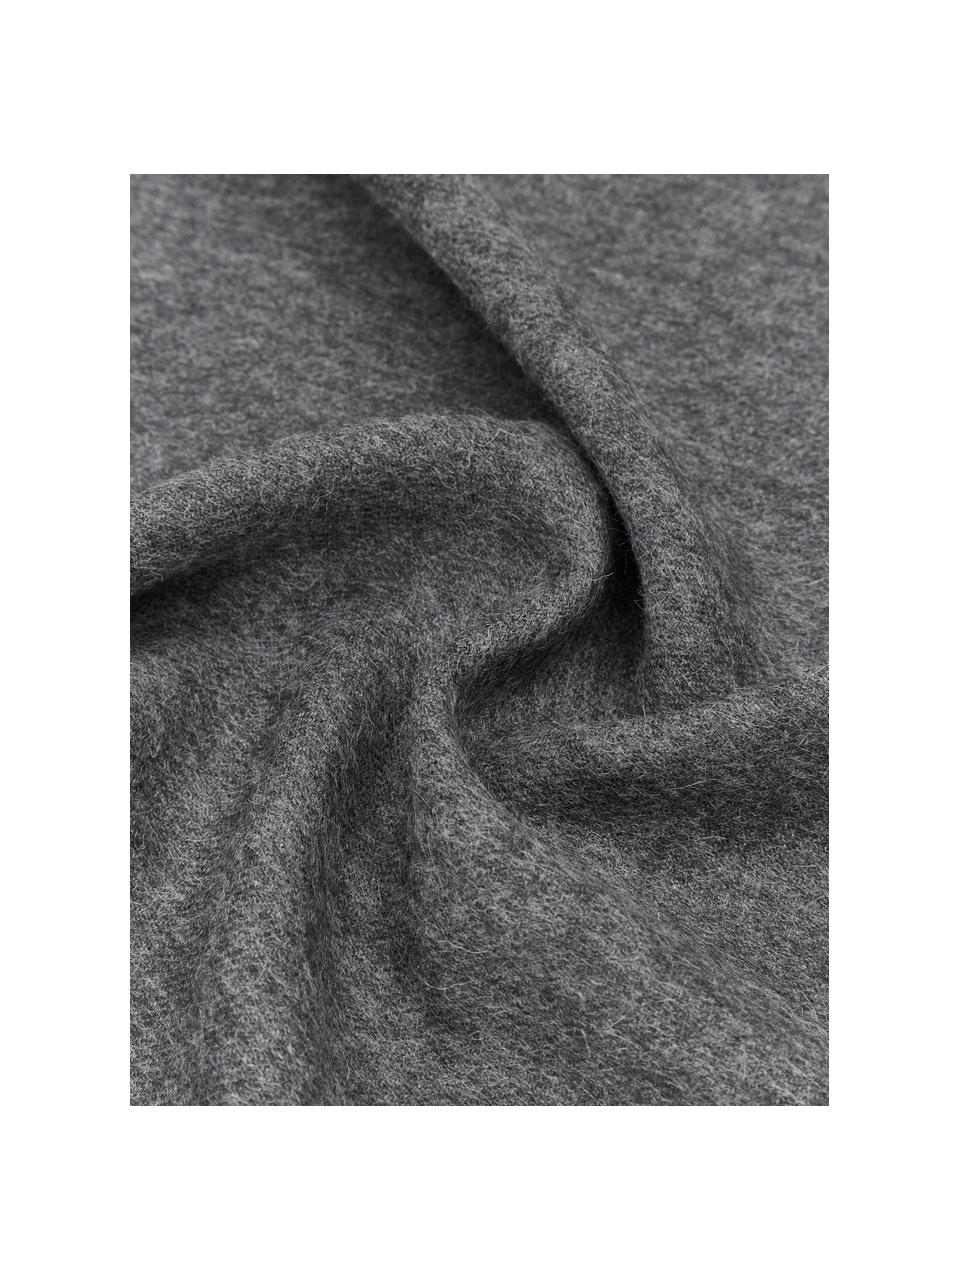 Coperta in lana di baby alpaca Luxury, 100% lana di baby alpaca

Questa coperta è realizzata in lana di baby alpaca super morbida e di alta qualità. Piacevole e calda per la pelle, è resistente ma allo stesso tempo leggera e ha eccellenti proprietà di termoregolazione. Ciò rende questa coperta perfetta per le fresche serate estive e le fredde giornate invernali., Grigio scuro, Larg. 130 x Lung. 200 cm